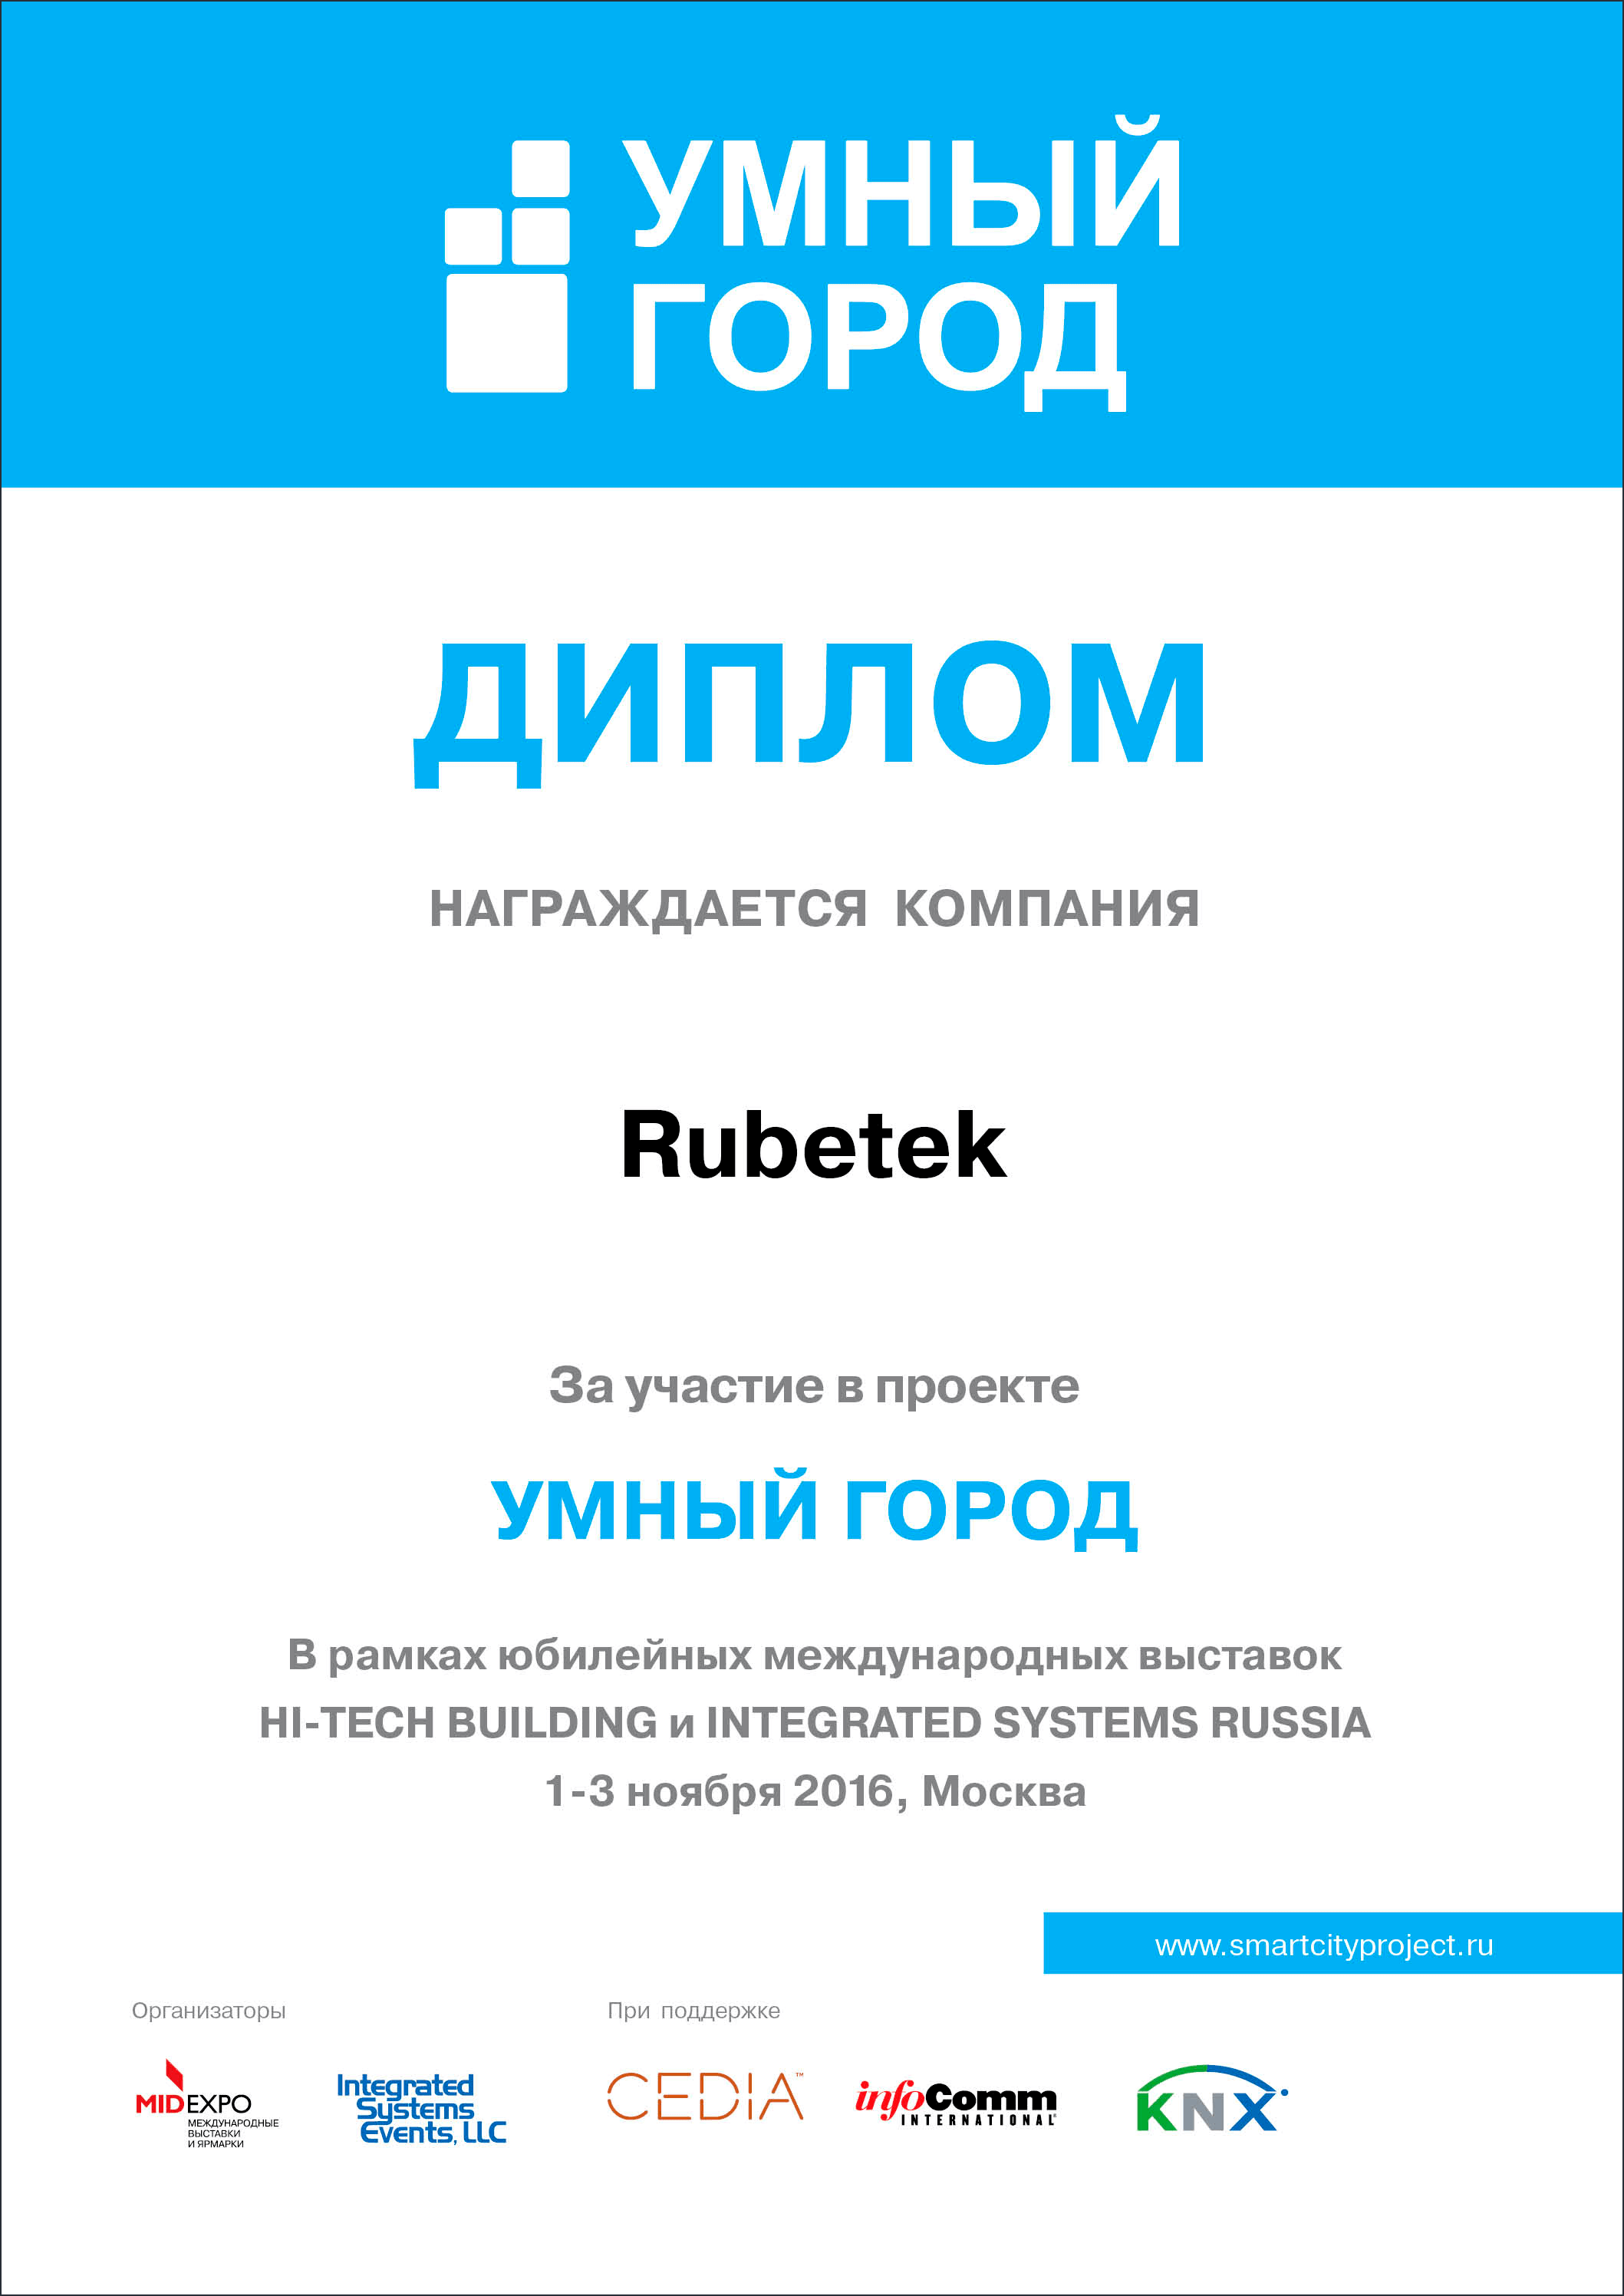 rubetek получил диплом участника выставки HI-TECH Building 2016!